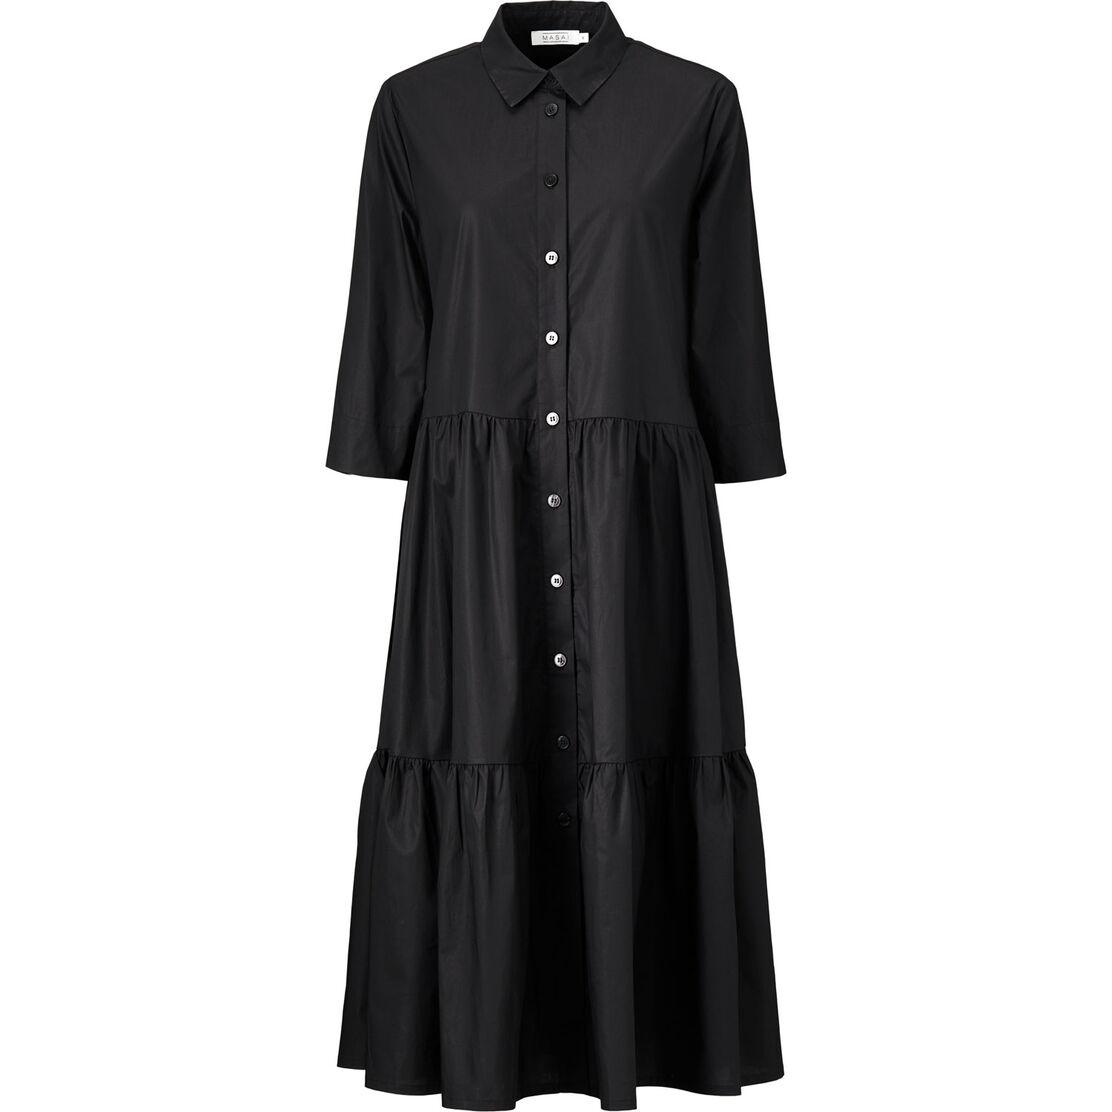 NYDILLA SHIRT DRESS, Black, hi-res